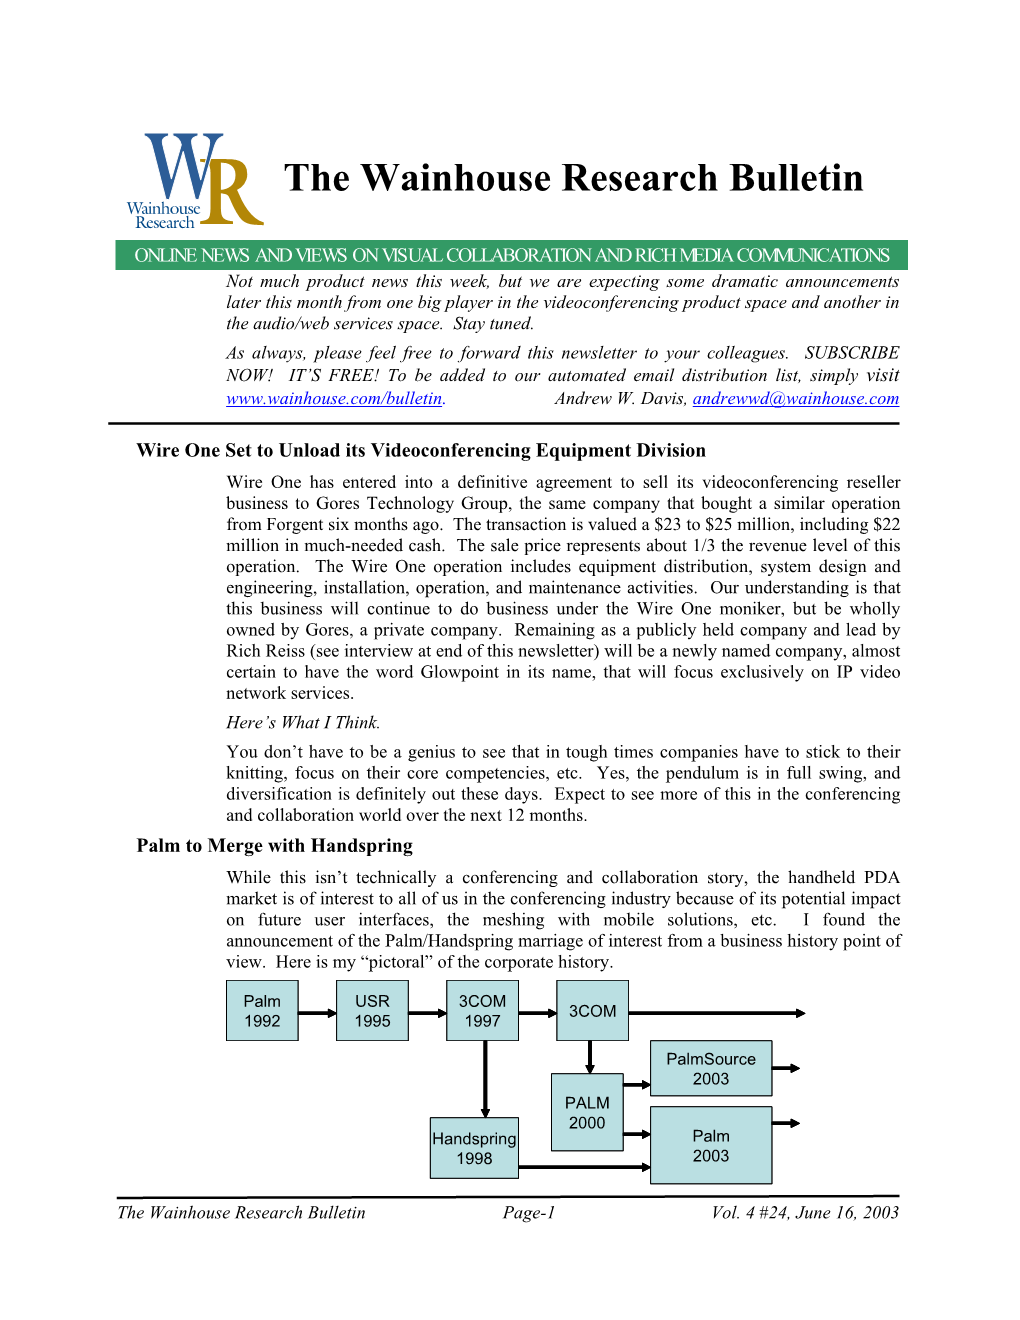 WR Bulletin Vol 4 Issue #24 16-Jun-03